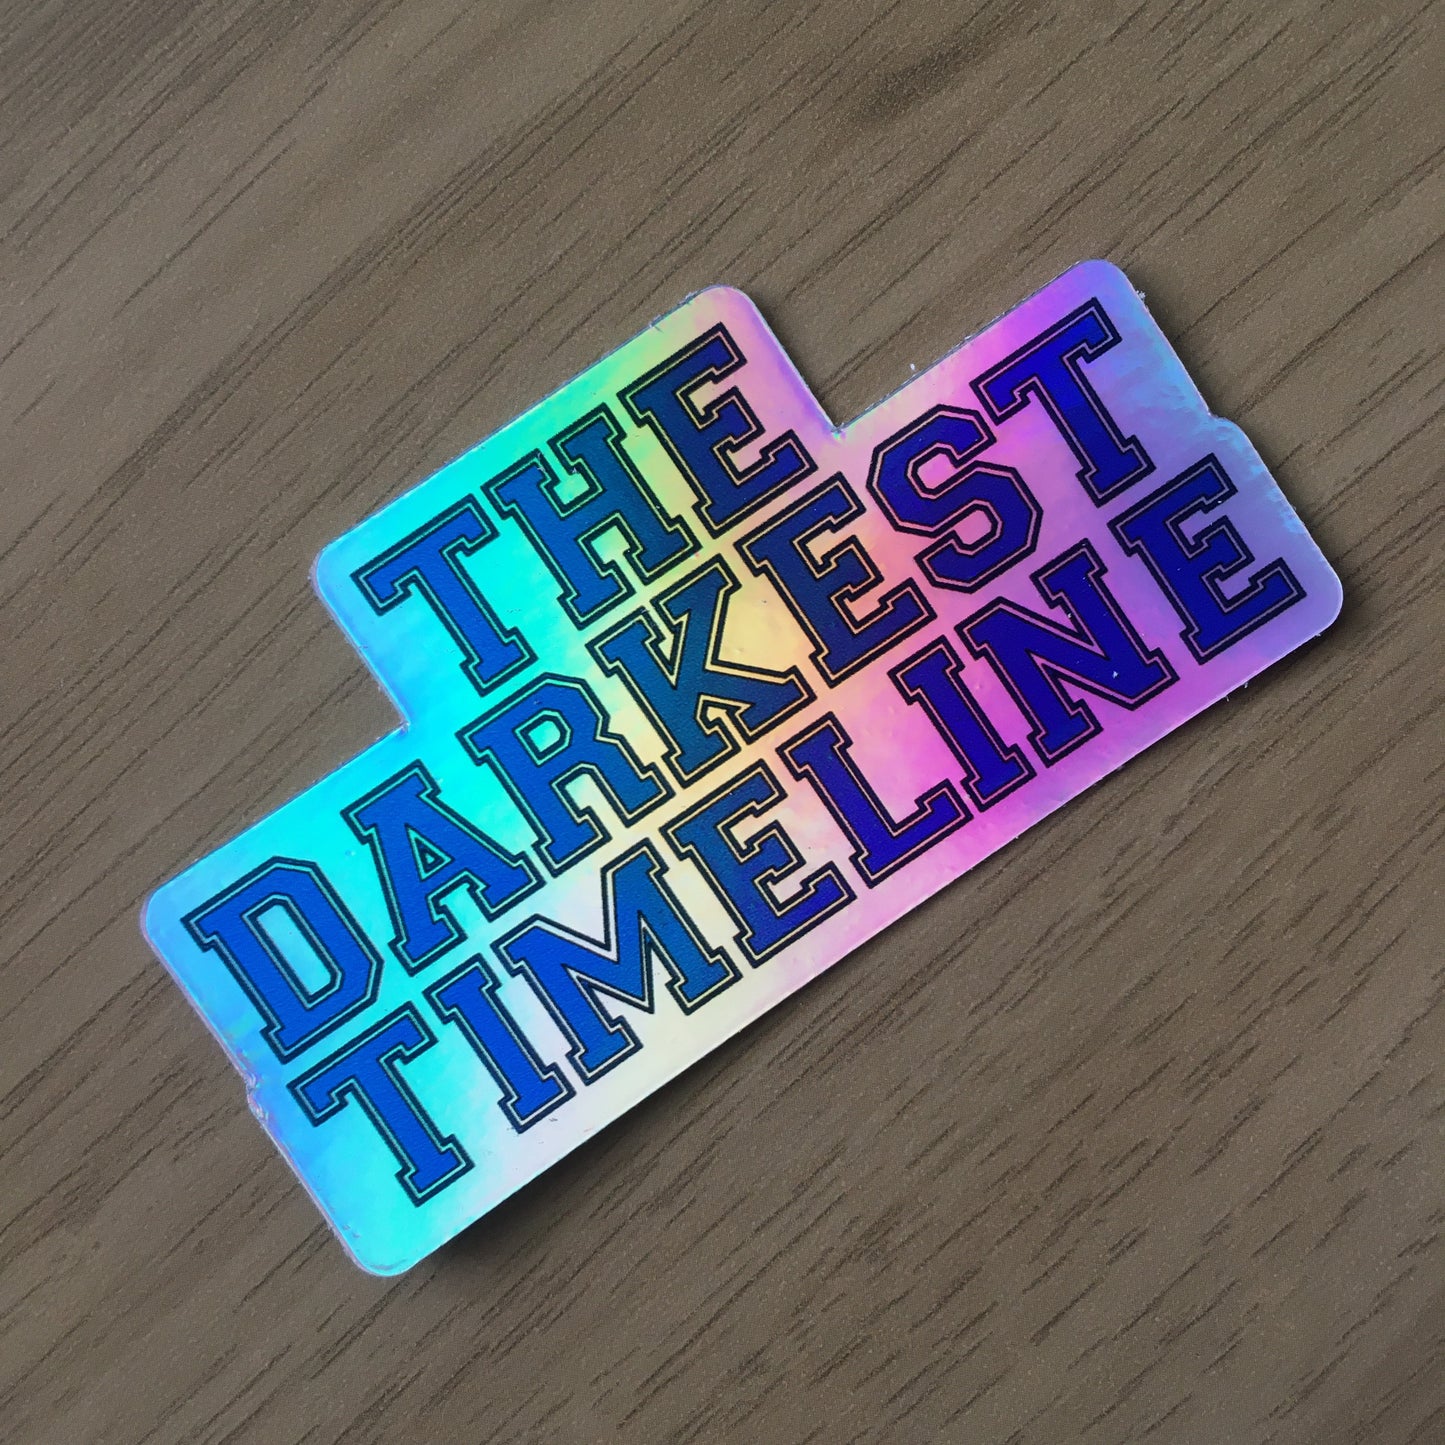 The Darkest Timeline - Holographic Sticker